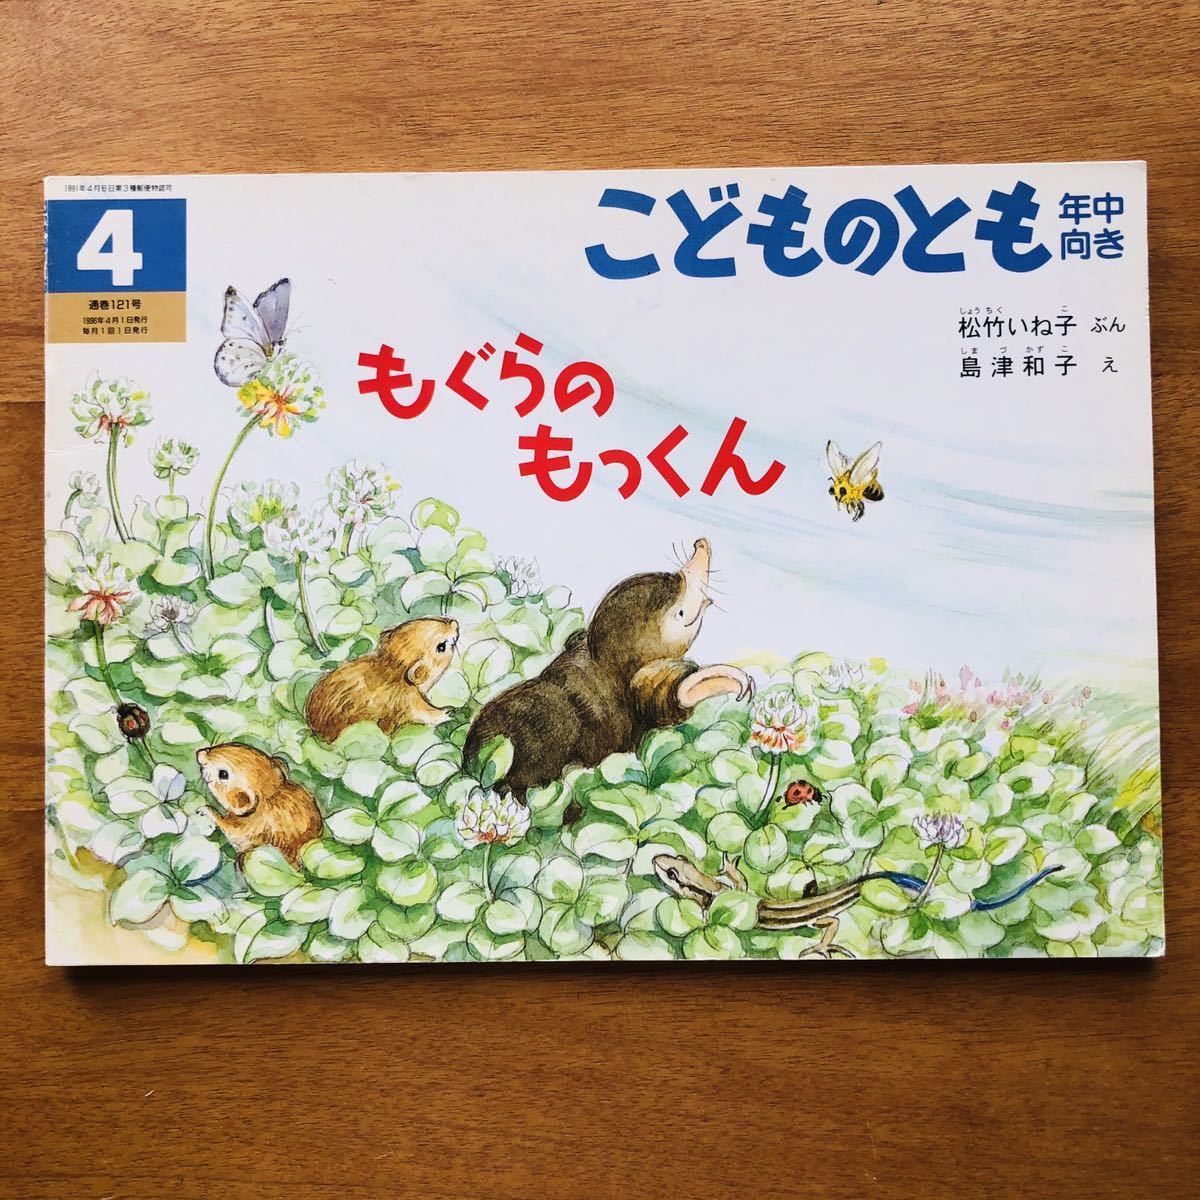 Paypayフリマ こどものとも もぐらのもっくん 松竹いね子 島津和子 １９９６年 初版 絶版 モグラ ネズミ 古い 絵本